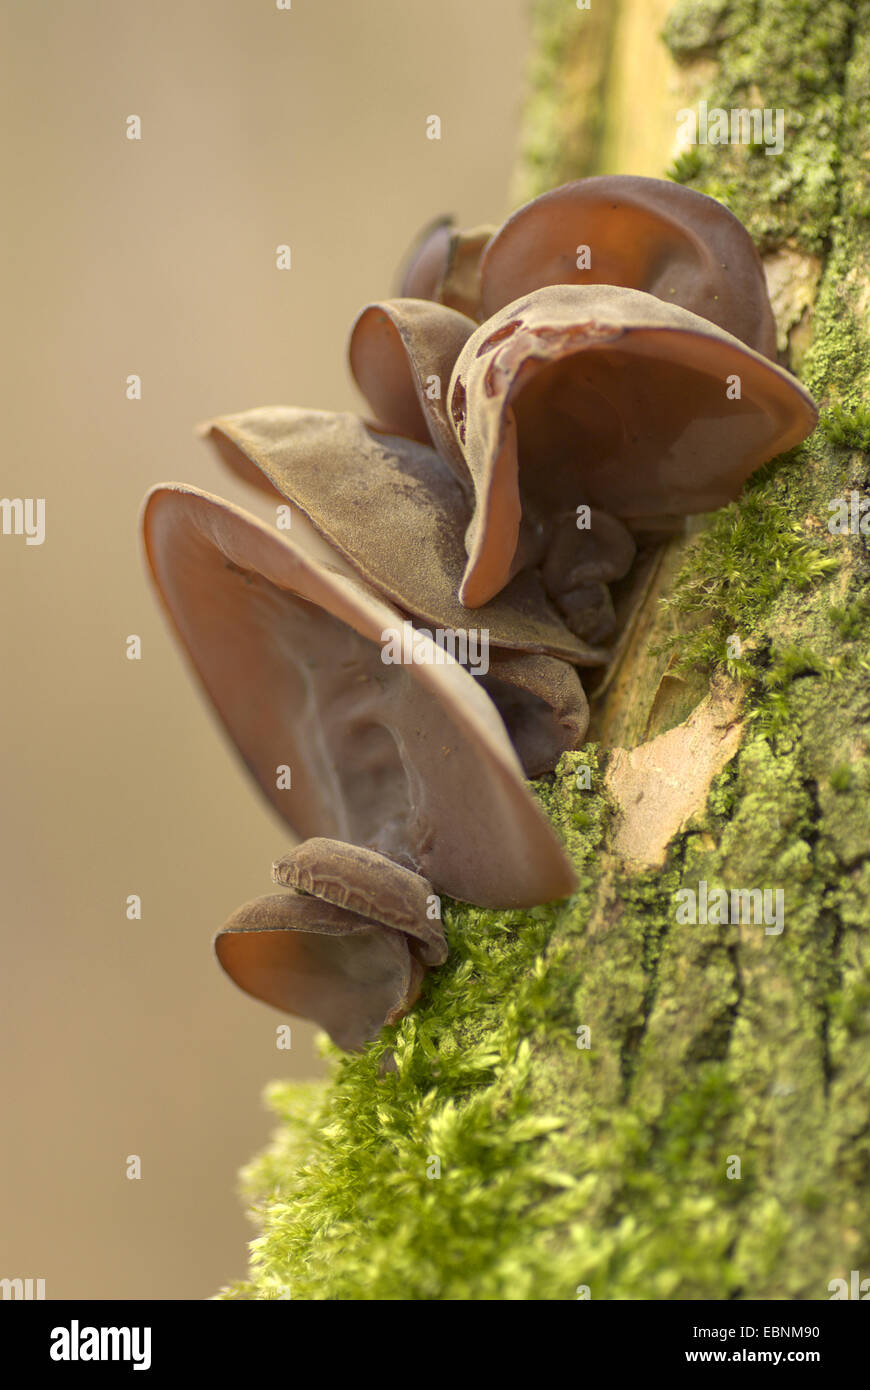 Jelly orecchio (Auricularia padiglione auricolare-judae, Hirneola padiglione auricolare-judae), di corpi fruttiferi sul tronco di albero, Germania Foto Stock